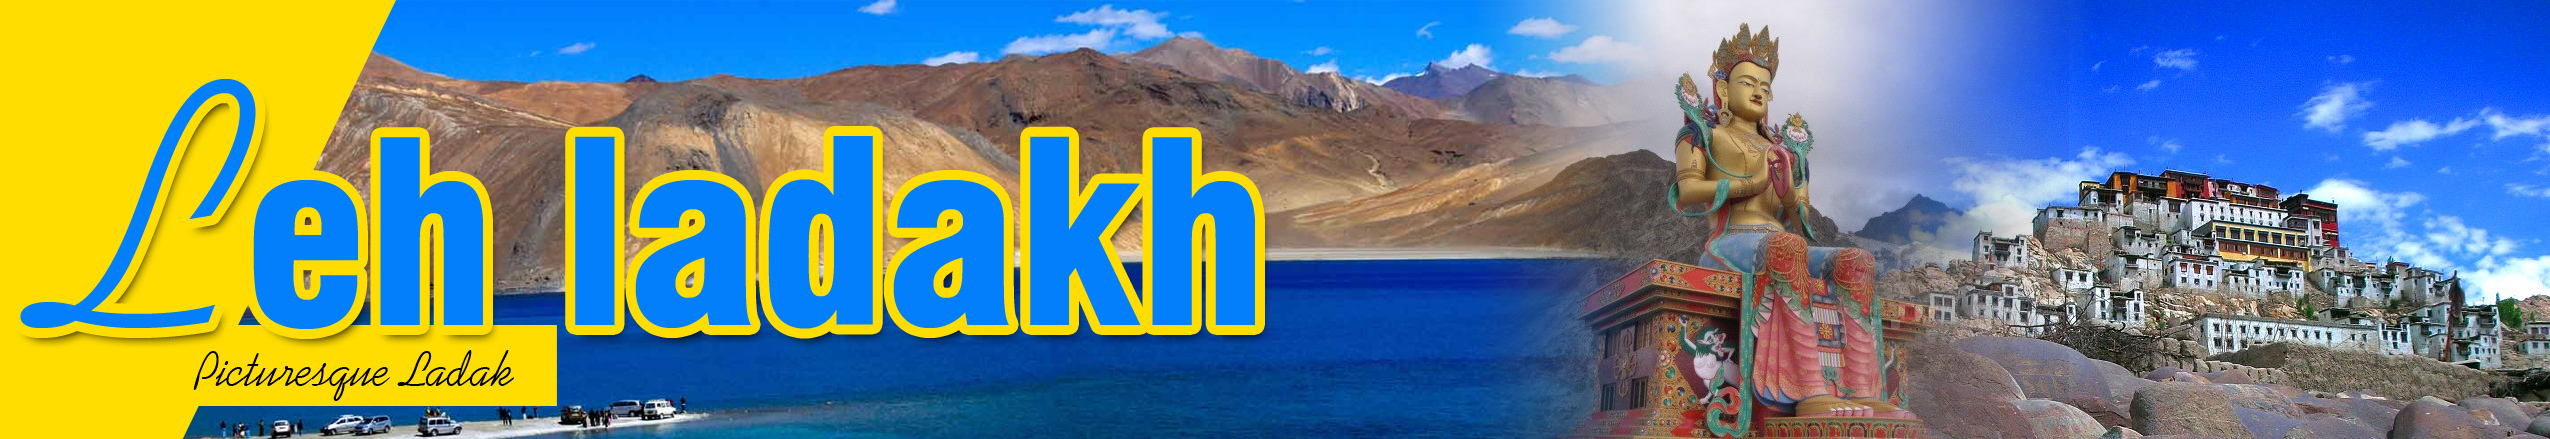 leh-ladakh Tour Packages